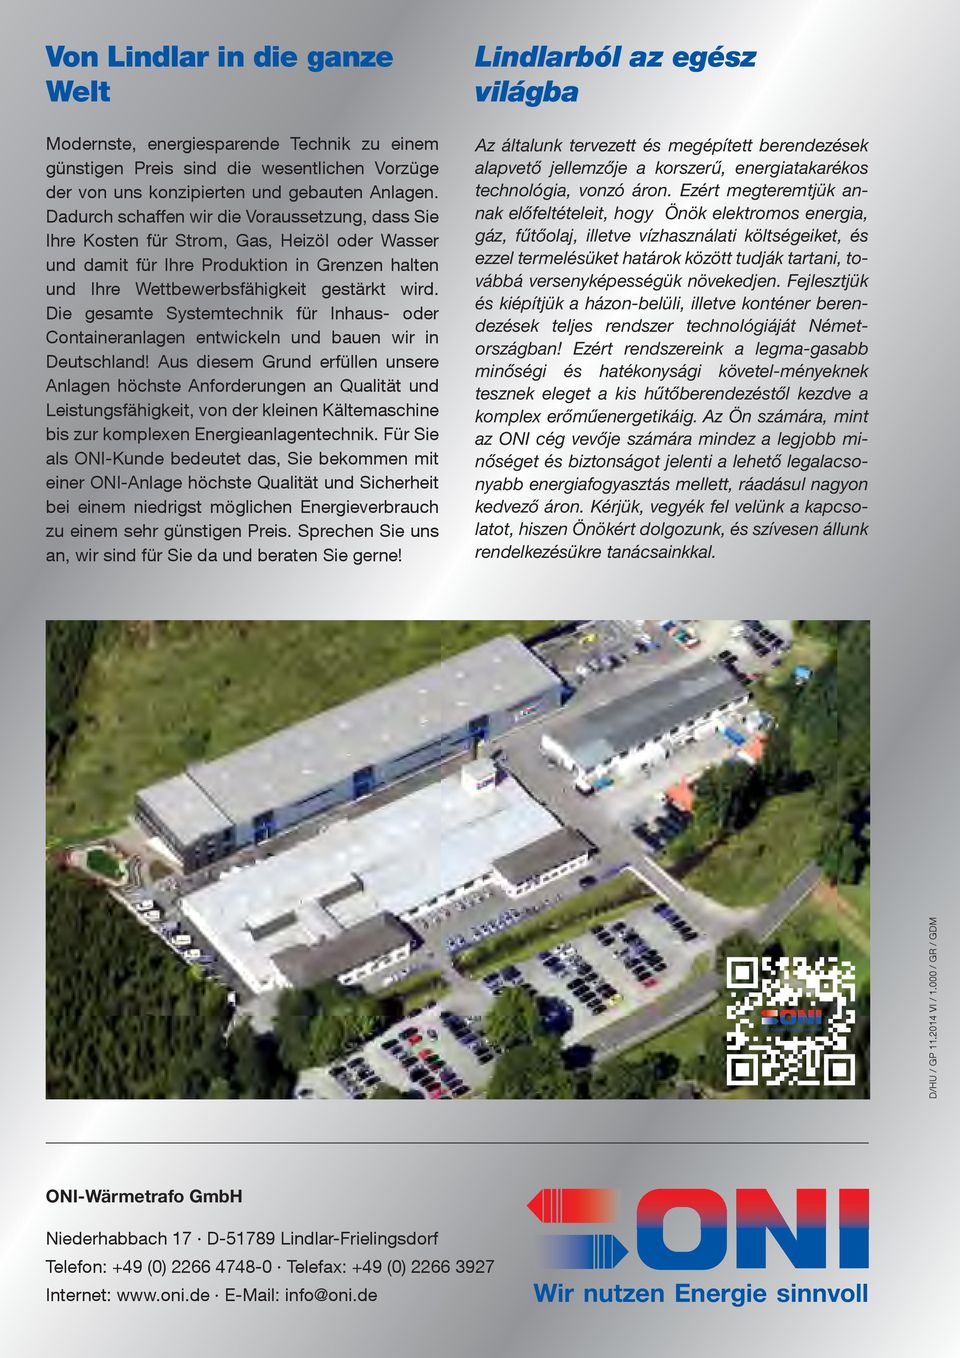 Die gesamte Systemtechnik für Inhaus- oder Containeranlagen entwickeln und bauen wir in Deutschland!